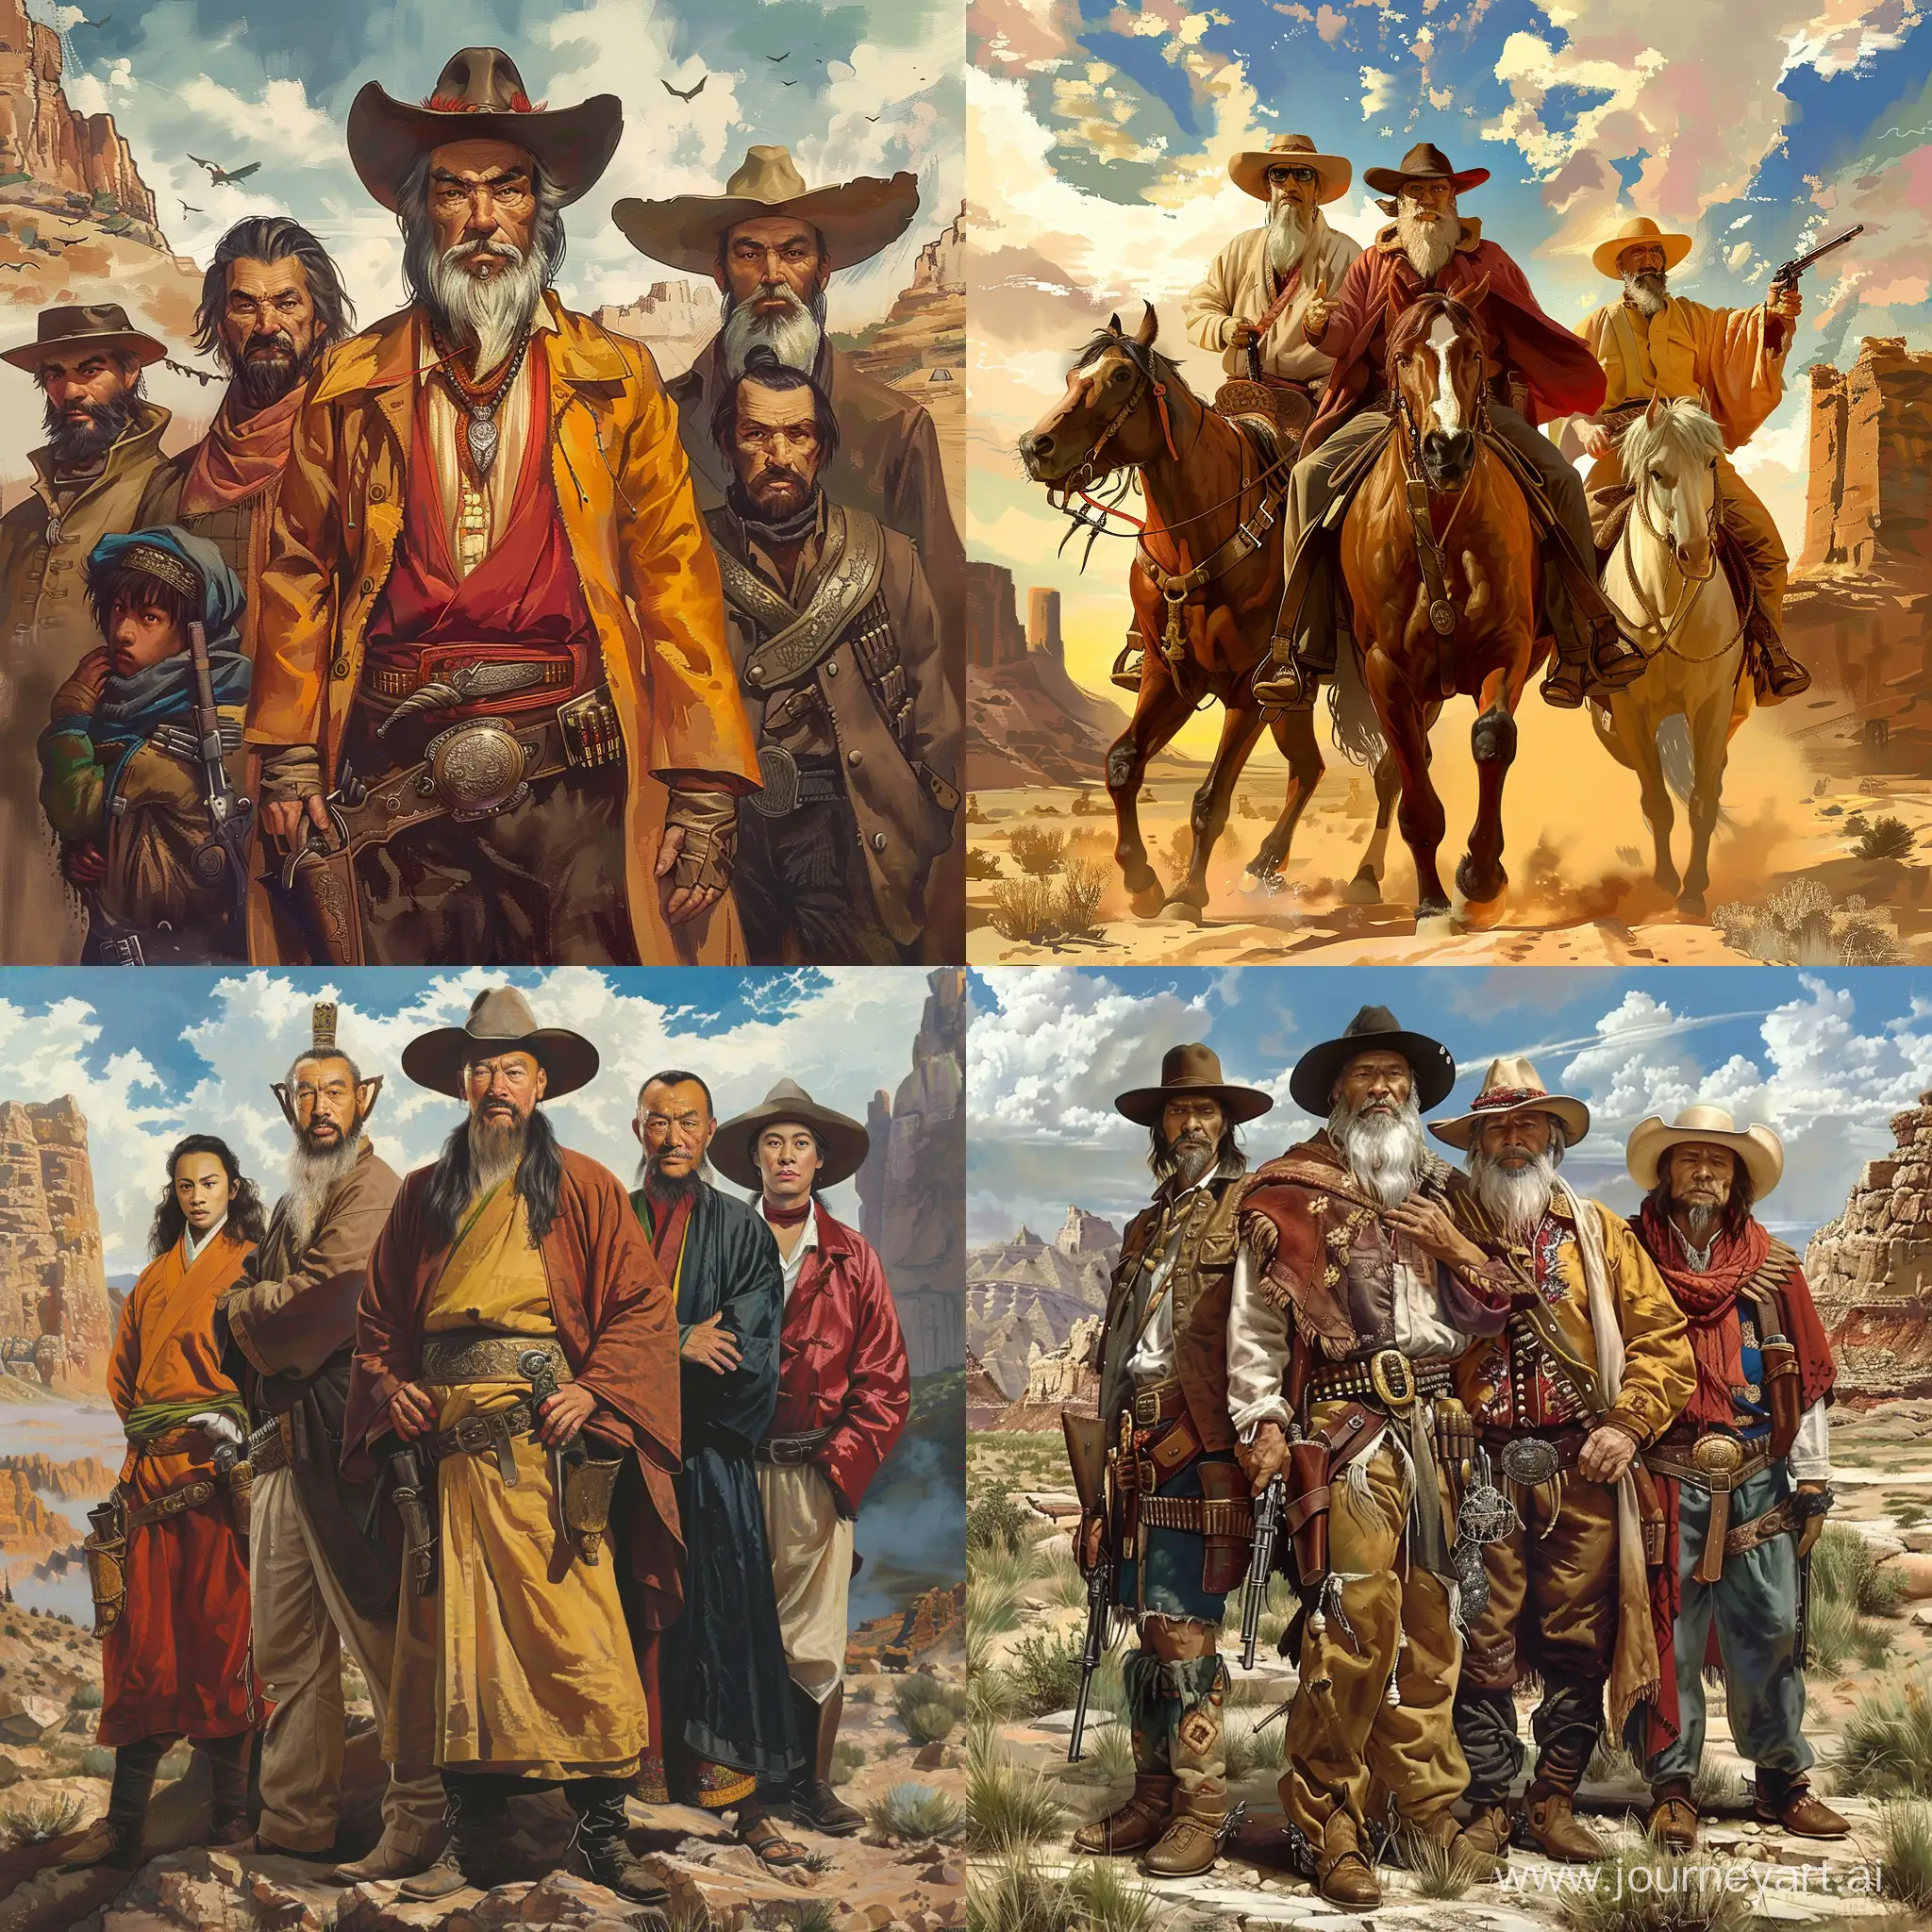 用西部拓荒牛仔风格画出西游记师徒形象